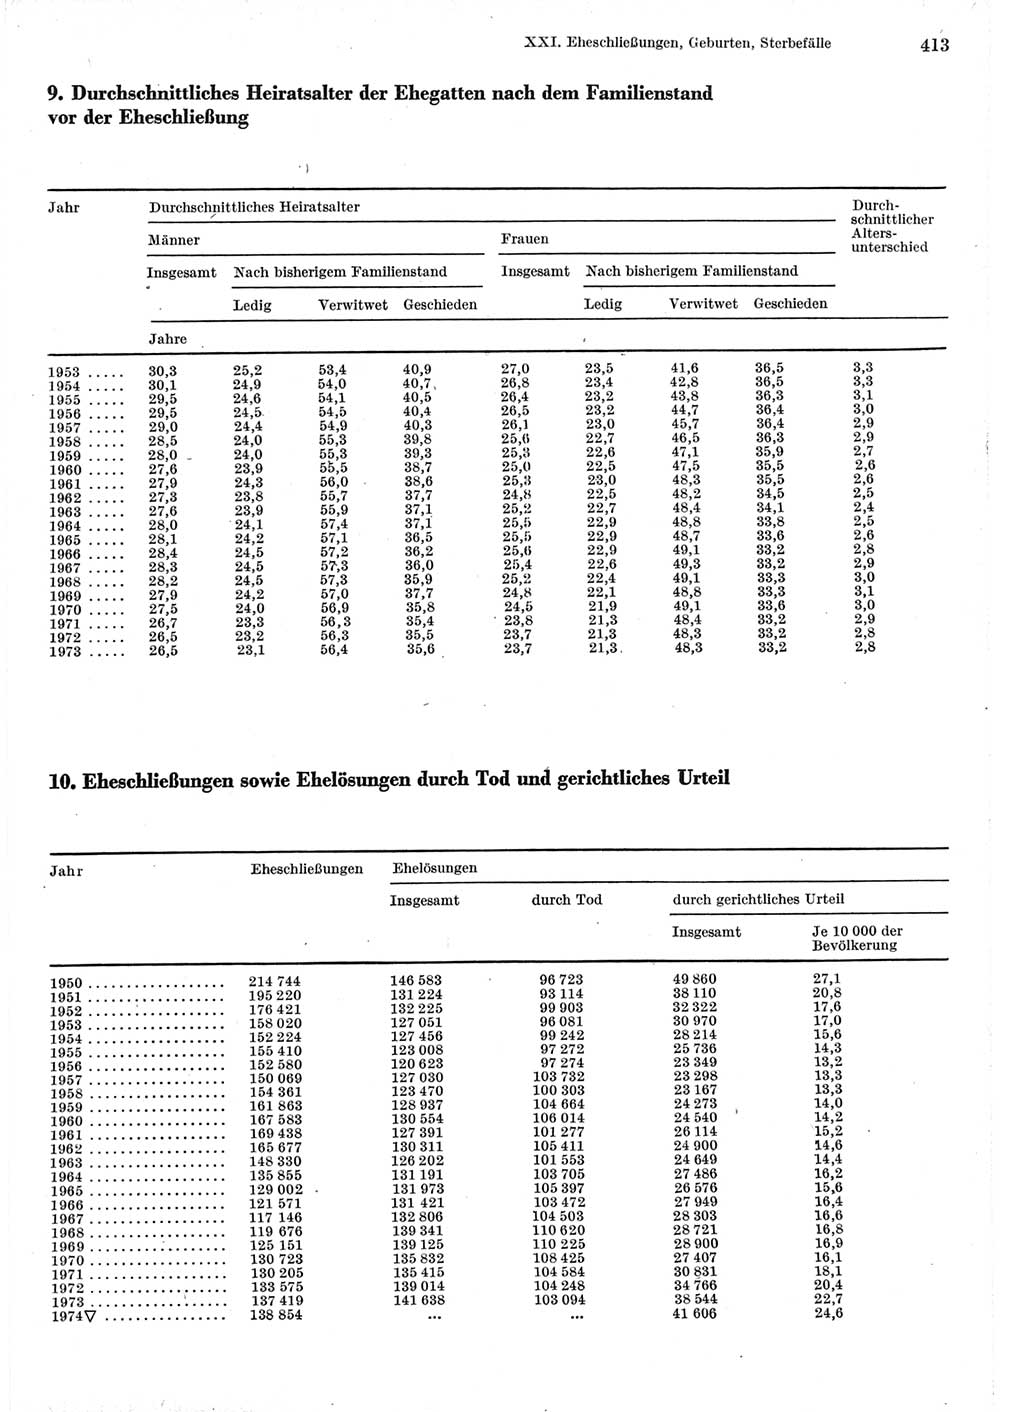 Statistisches Jahrbuch der Deutschen Demokratischen Republik (DDR) 1975, Seite 413 (Stat. Jb. DDR 1975, S. 413)